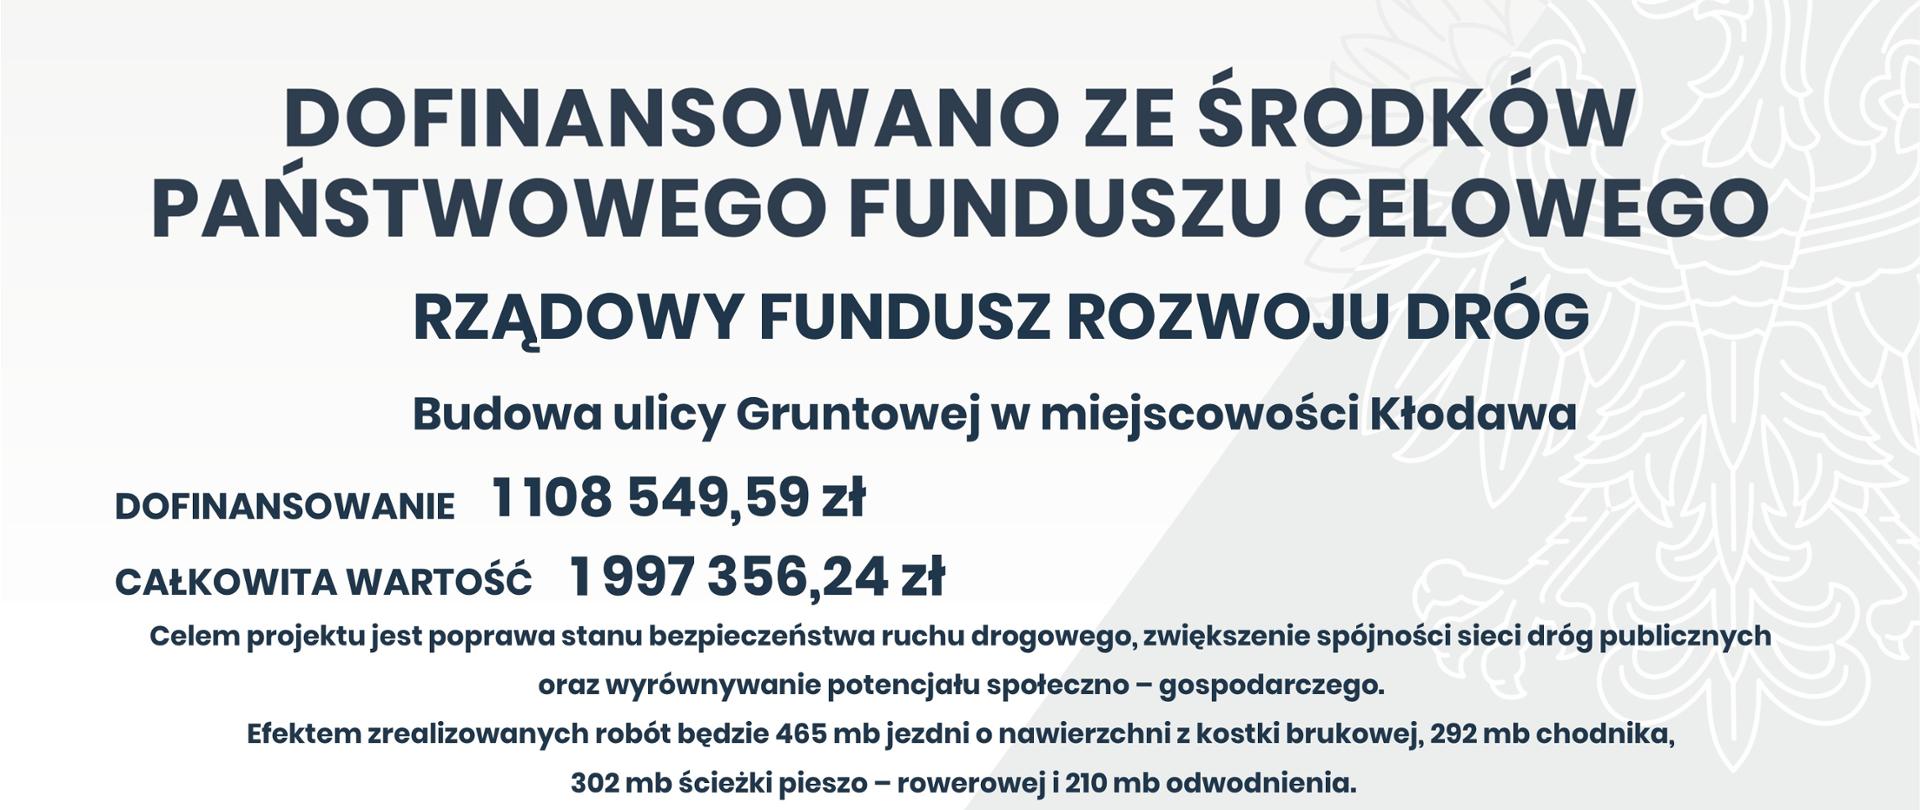 Budowa ulicy Gruntowej w miejscowości Kłodawa - tablica informacyjna